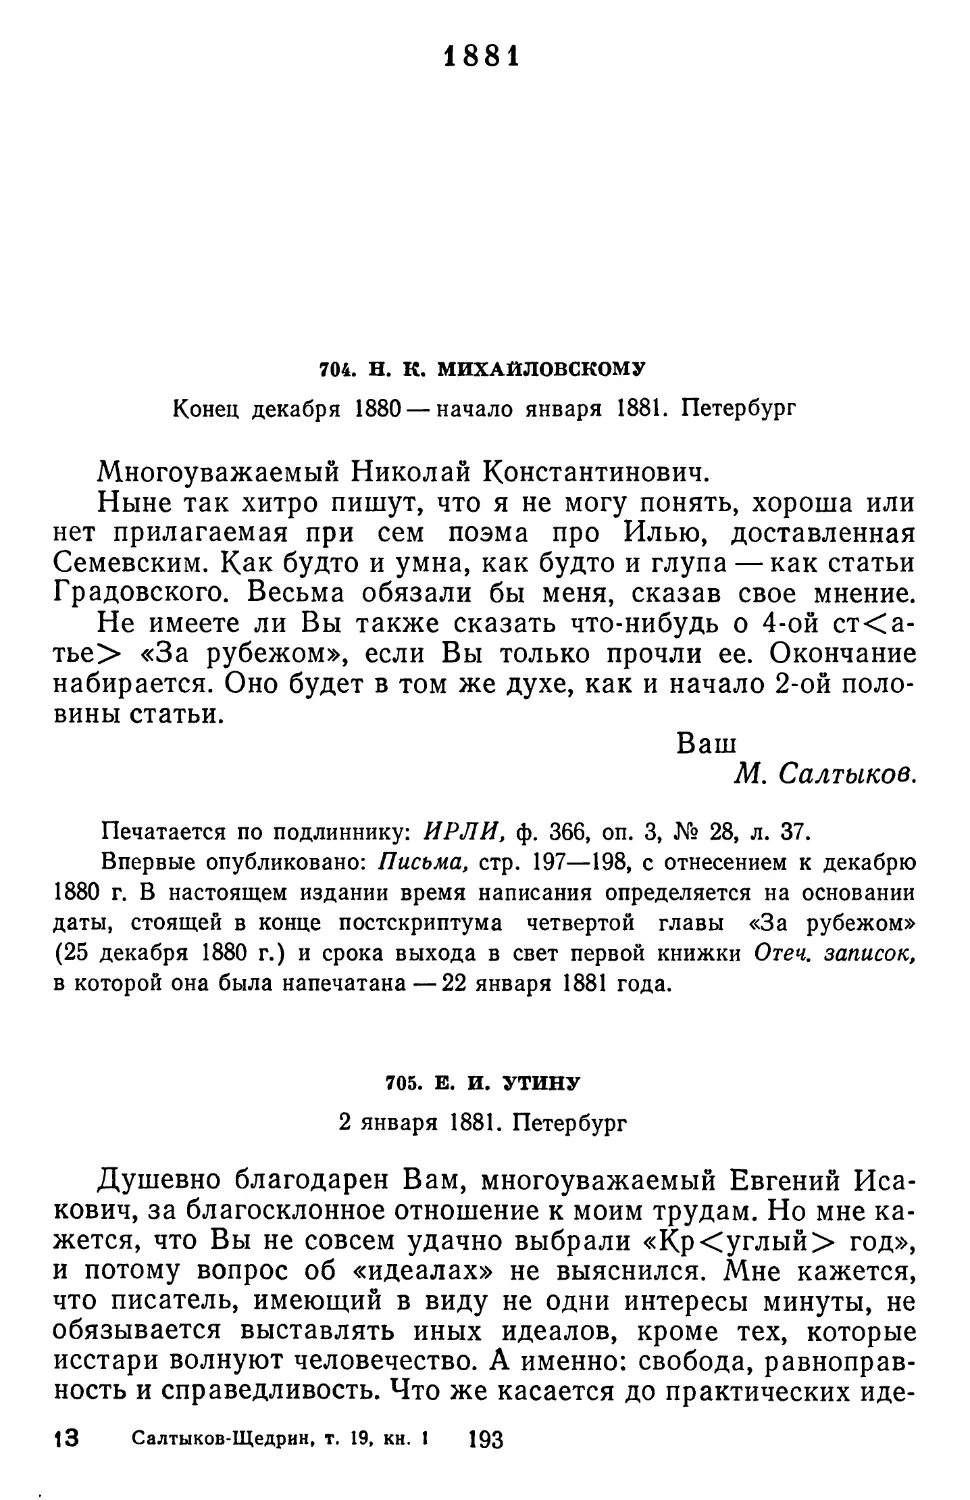 1881
705.Е. И. Утину. 2 января 1881. Петербург